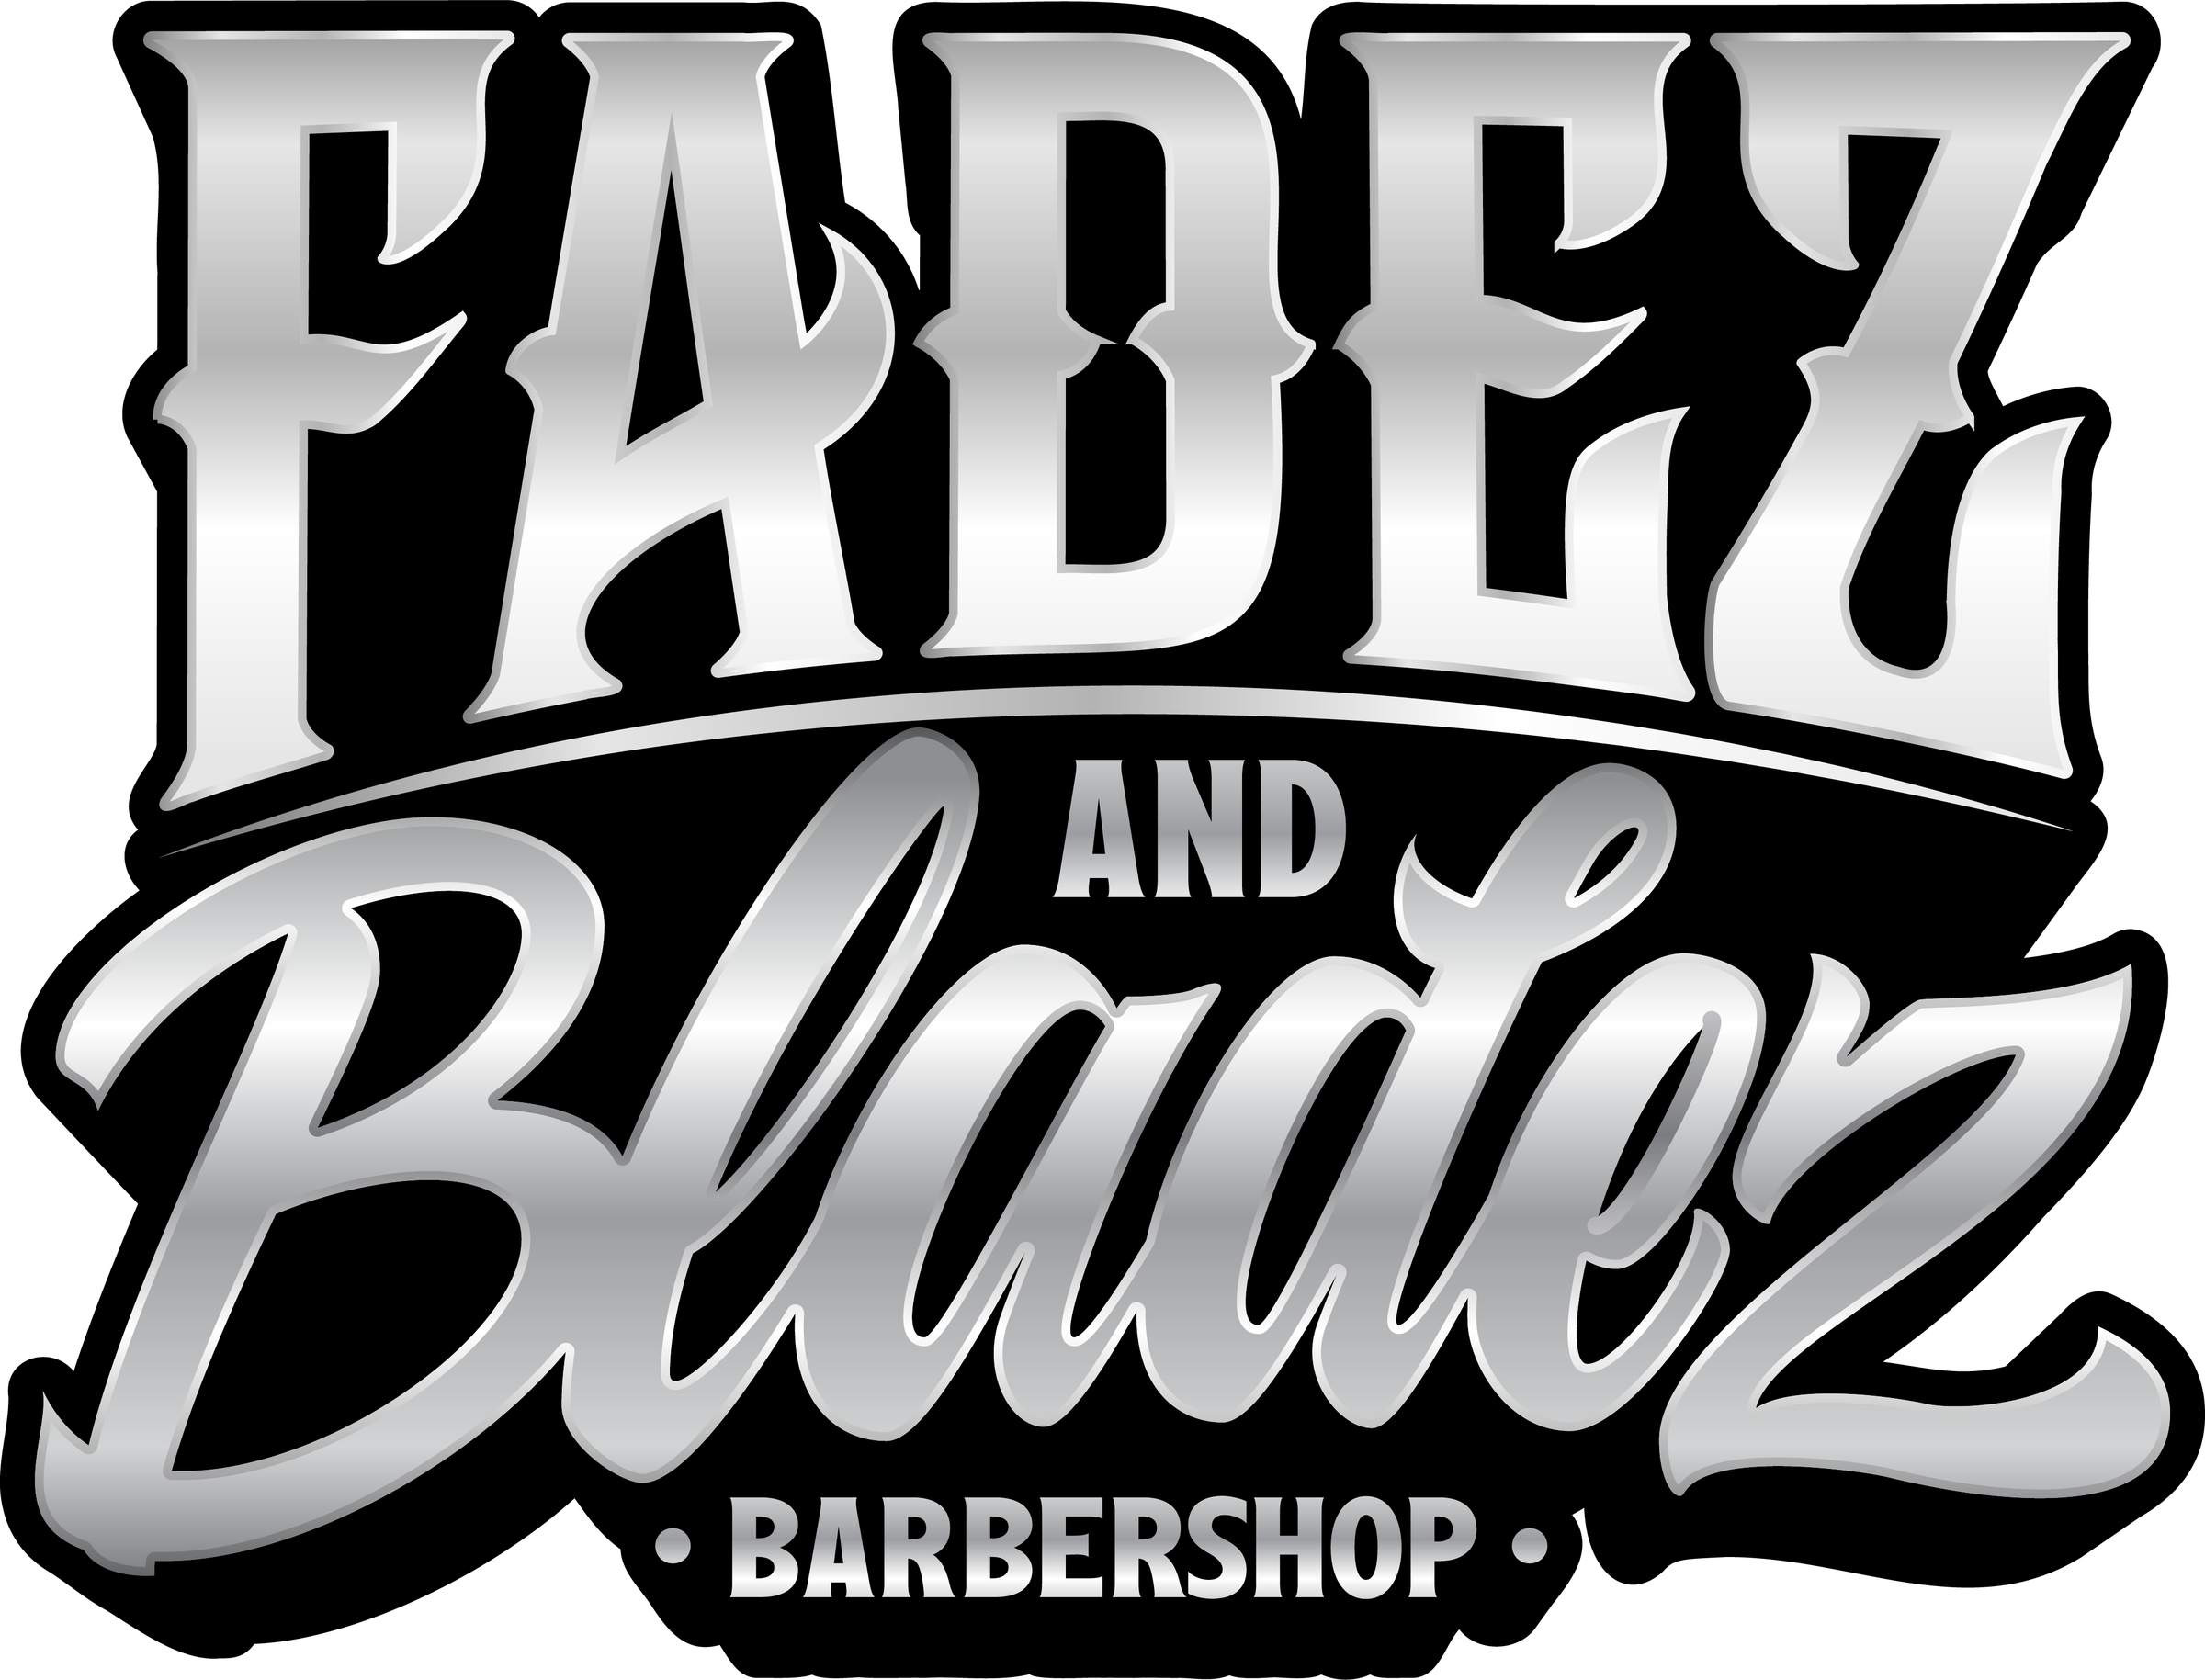 1 Bladez black barber shops near me Ft Worth – Looking for Bladez